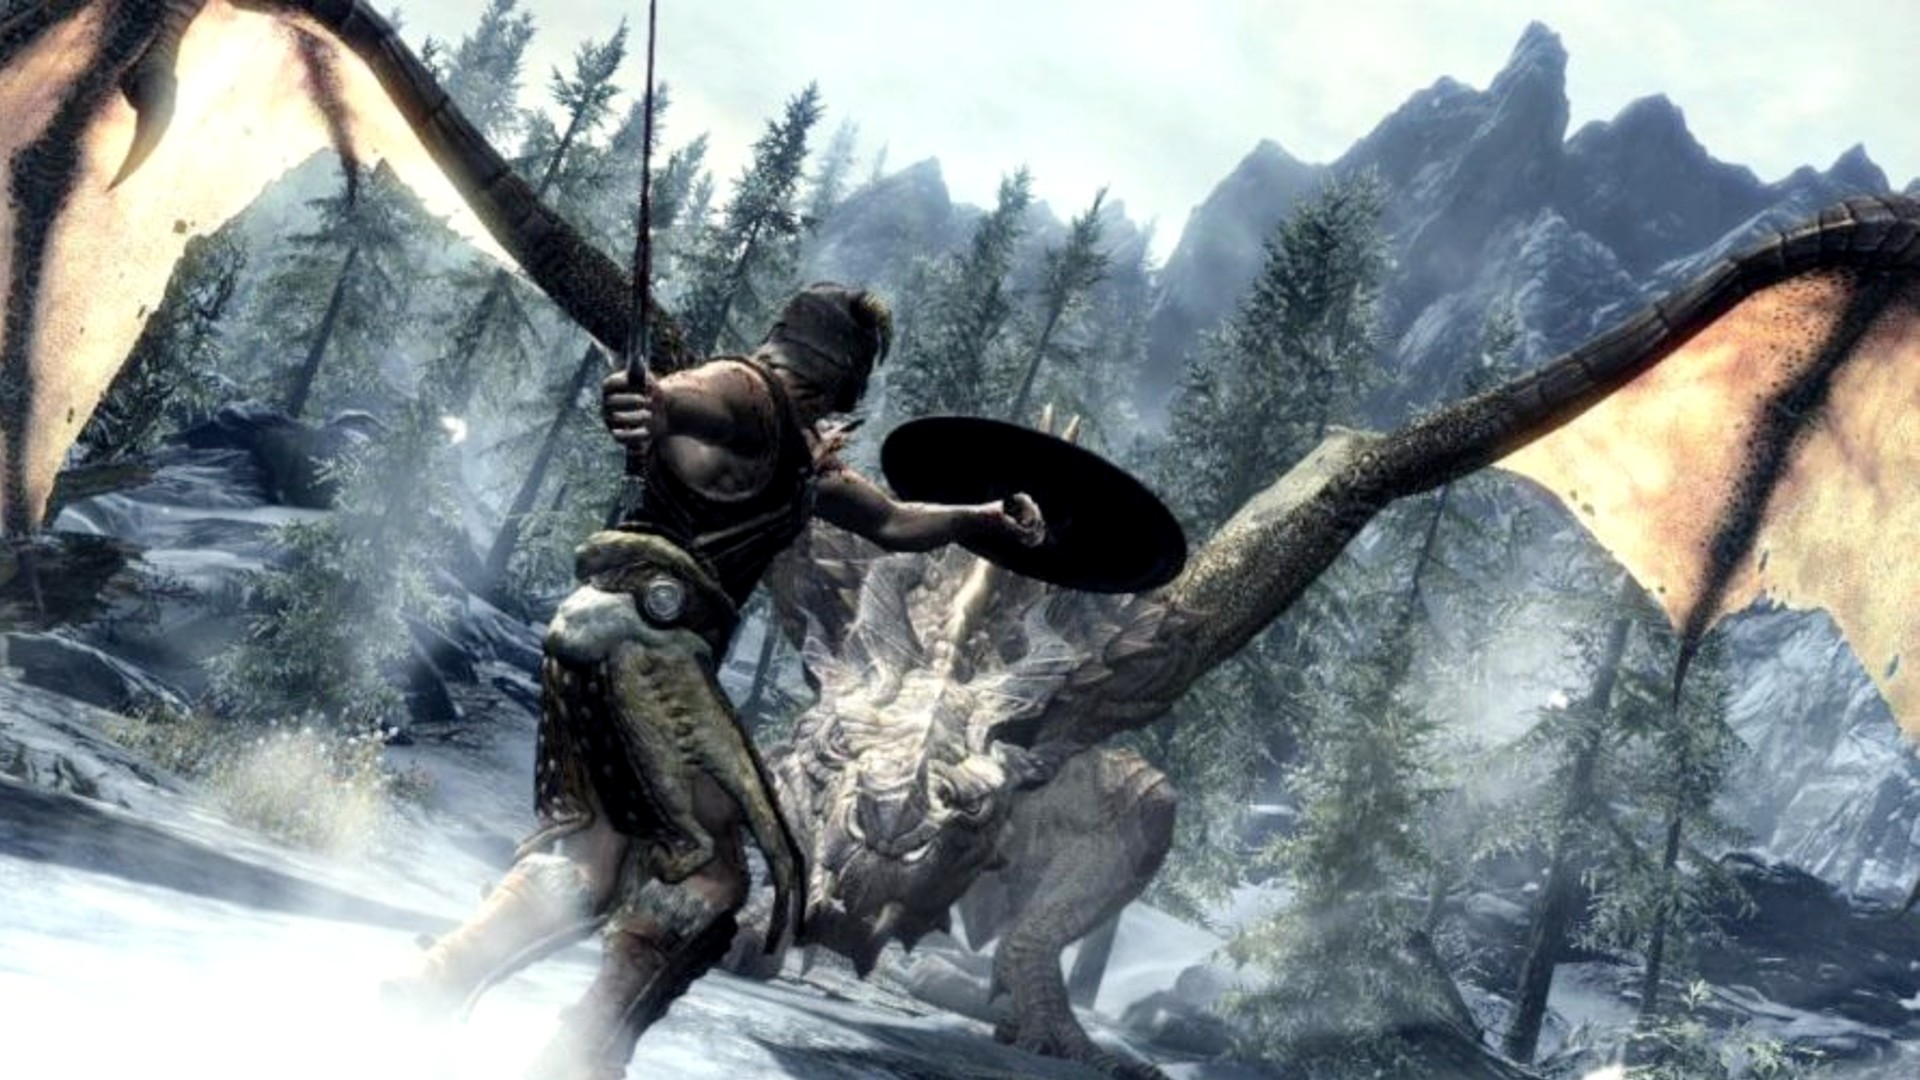 Най -добрите RPG игри: Skyrim. Изображението показва, че някой се готви да се бори с дракон в снежна среда